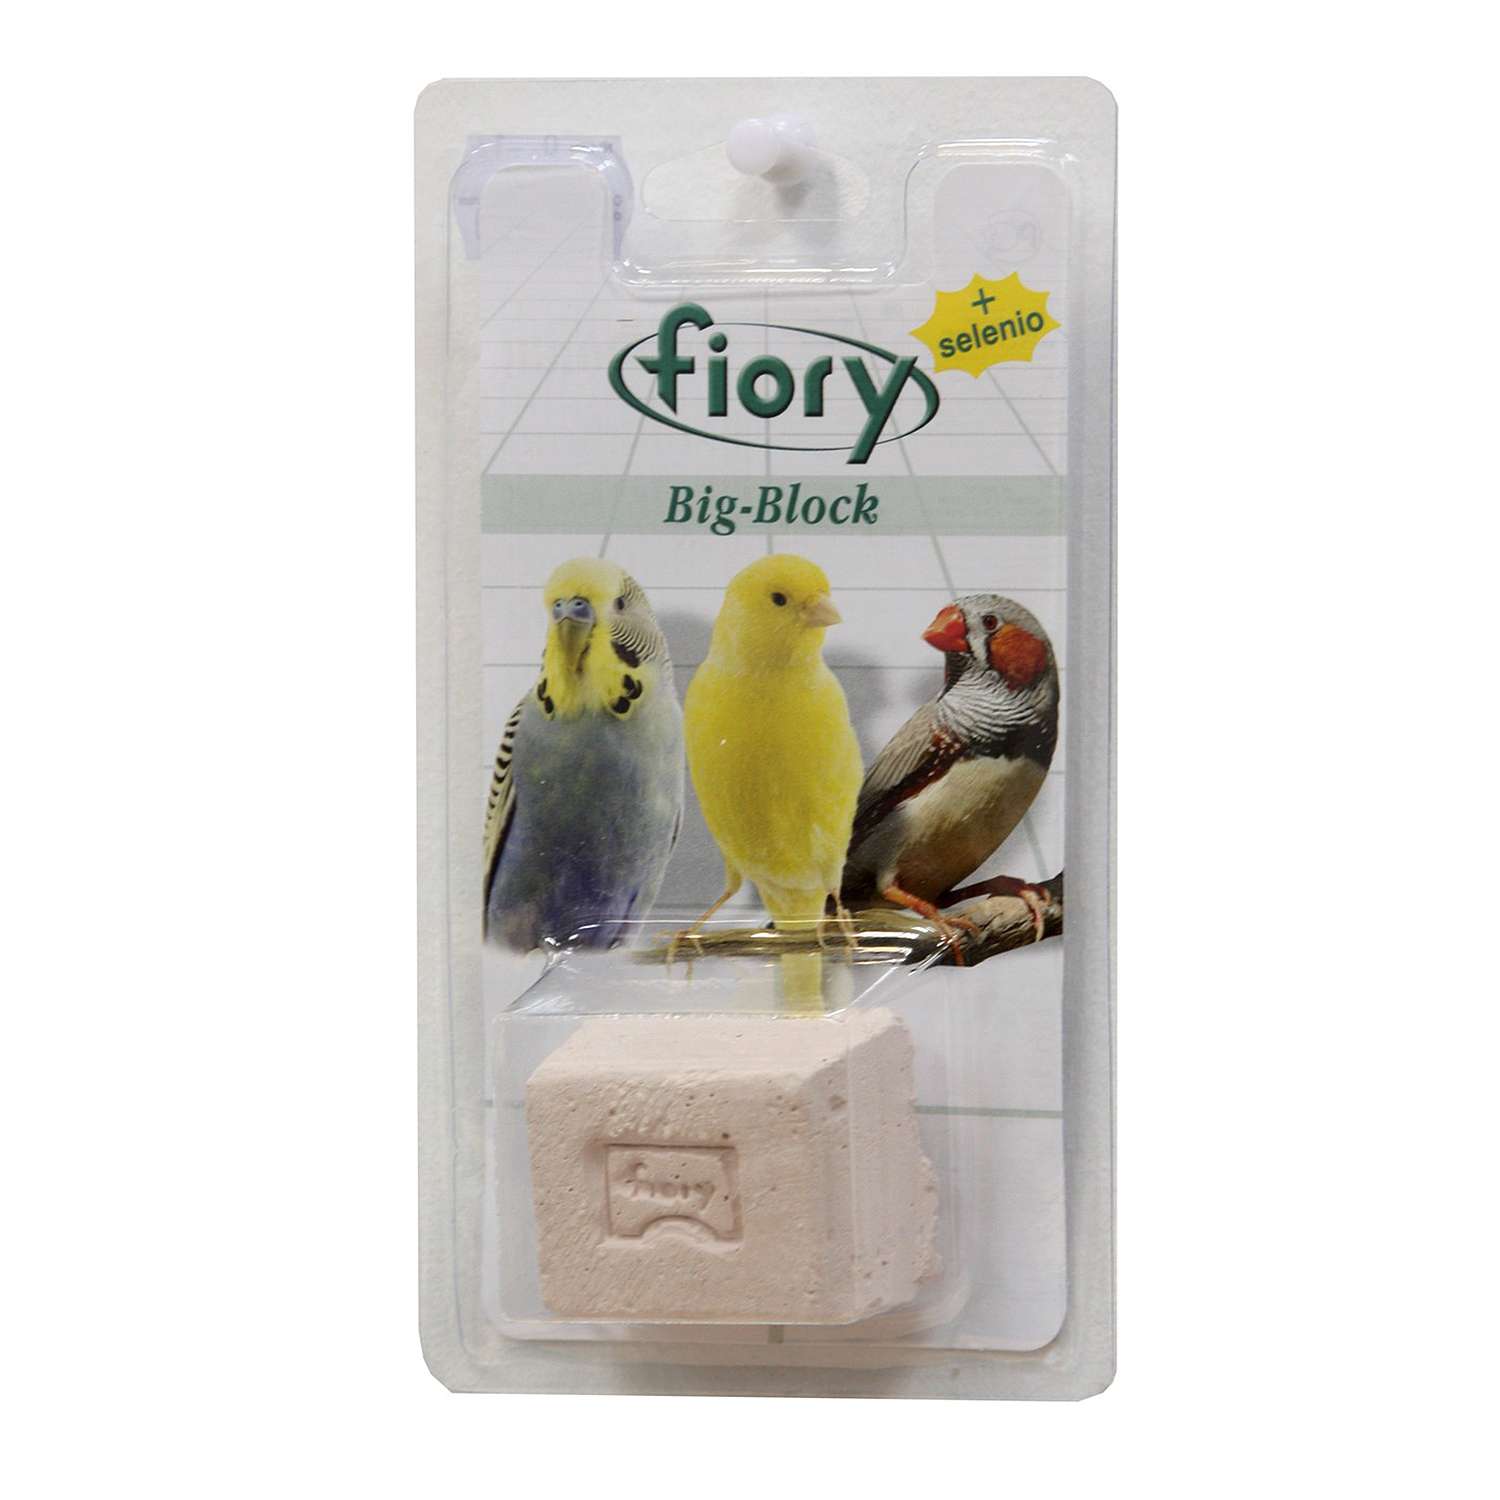 Био-камень для птиц Fiory Big-Block с селеном 55г - фото 1